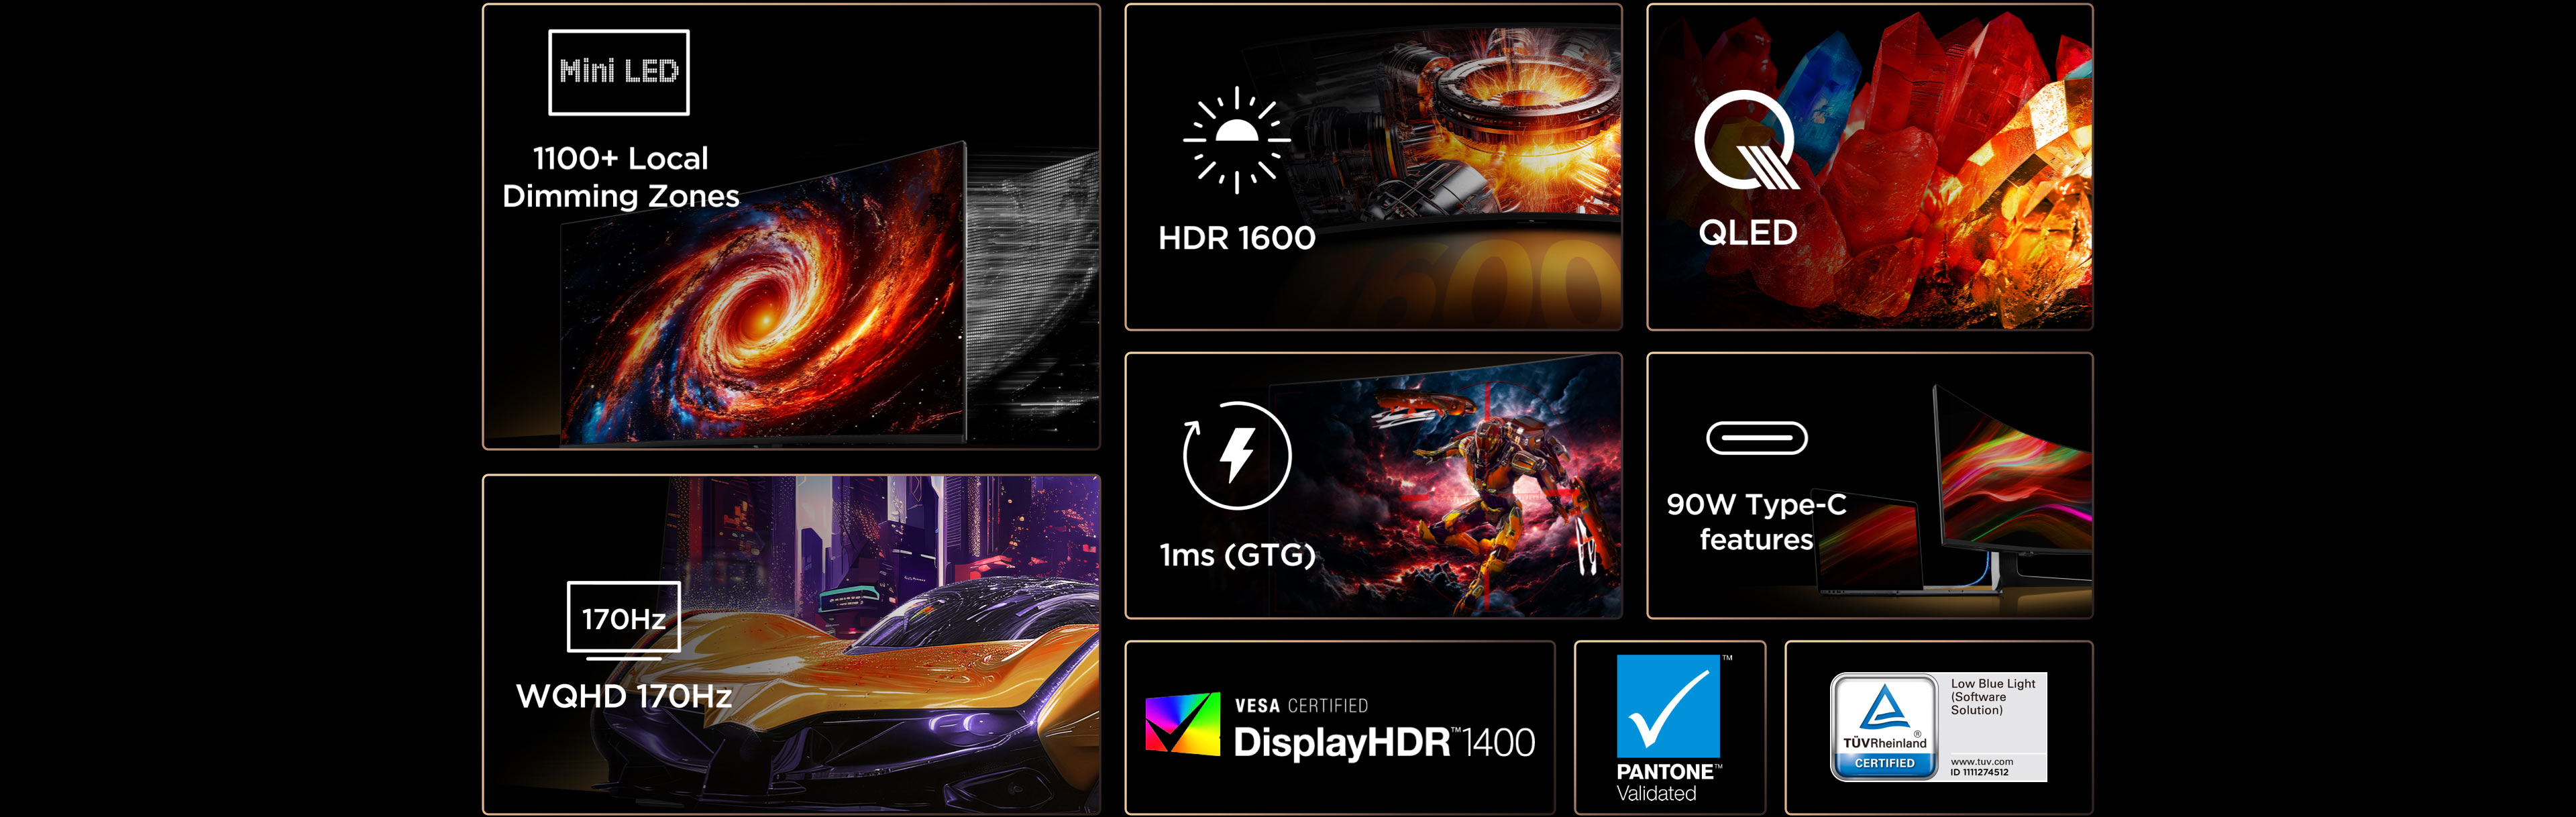 南宫ng·28 34R83Q HDR Professional Monitor Features